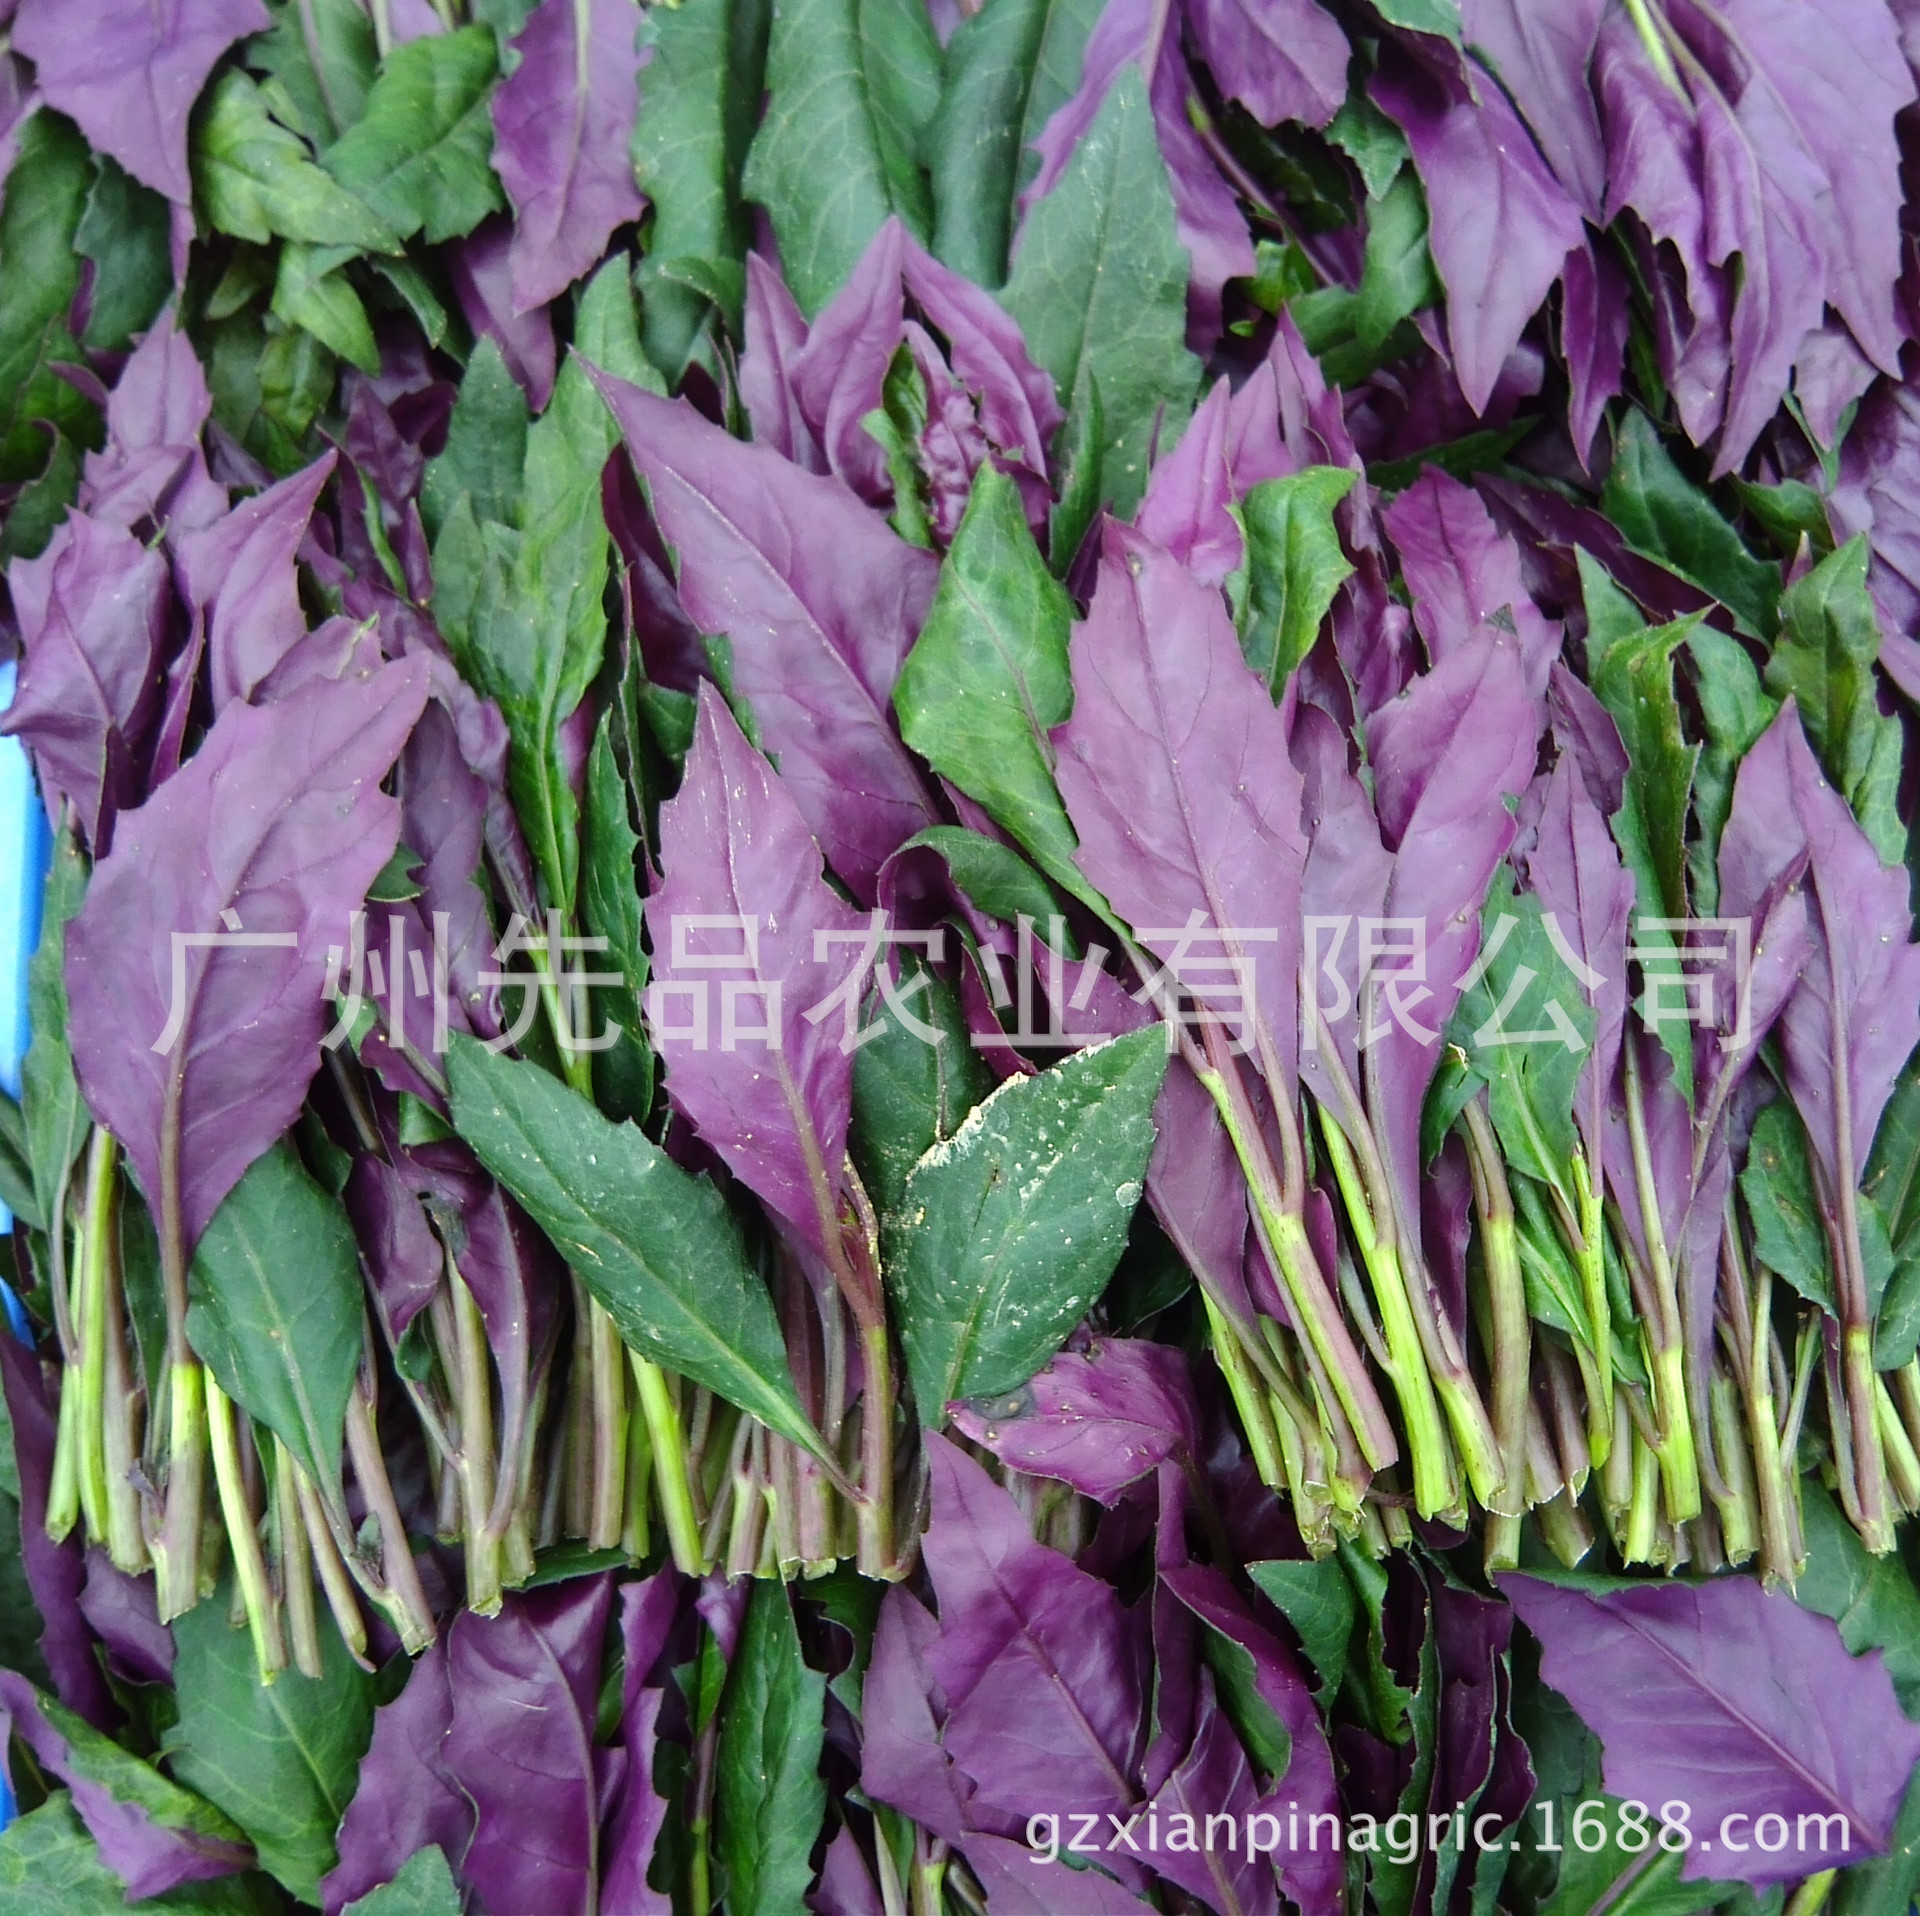 无公害 社区配送 野生蔬菜【紫背菜(400克/包)